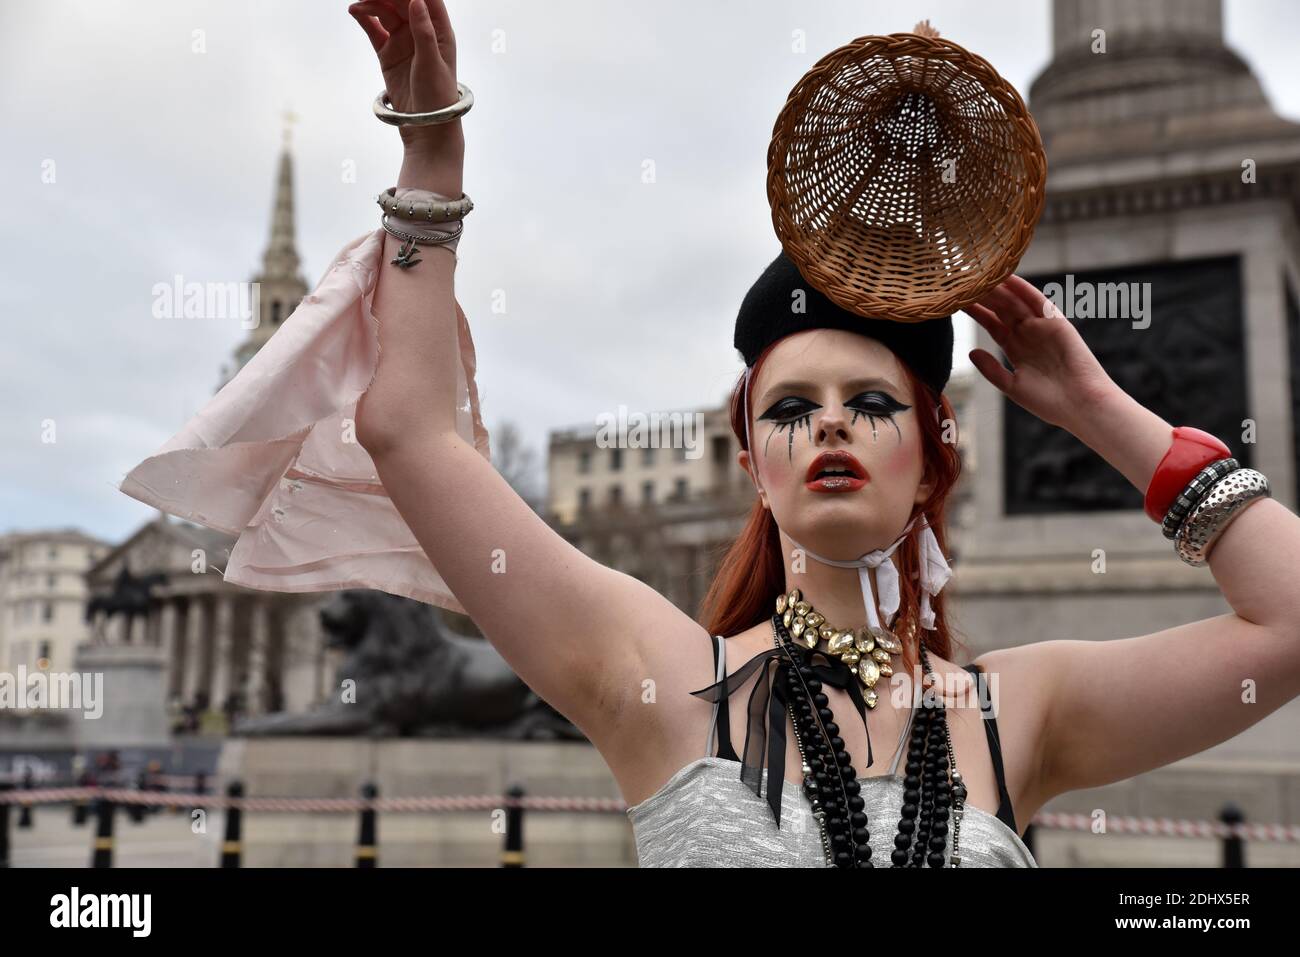 Londra, Regno Unito. 12 dicembre 2020. Designer Pierre Garroudi Flashmob nel centro di Londra. Credit: Matthew Chpicle/Alamy Live News Foto Stock